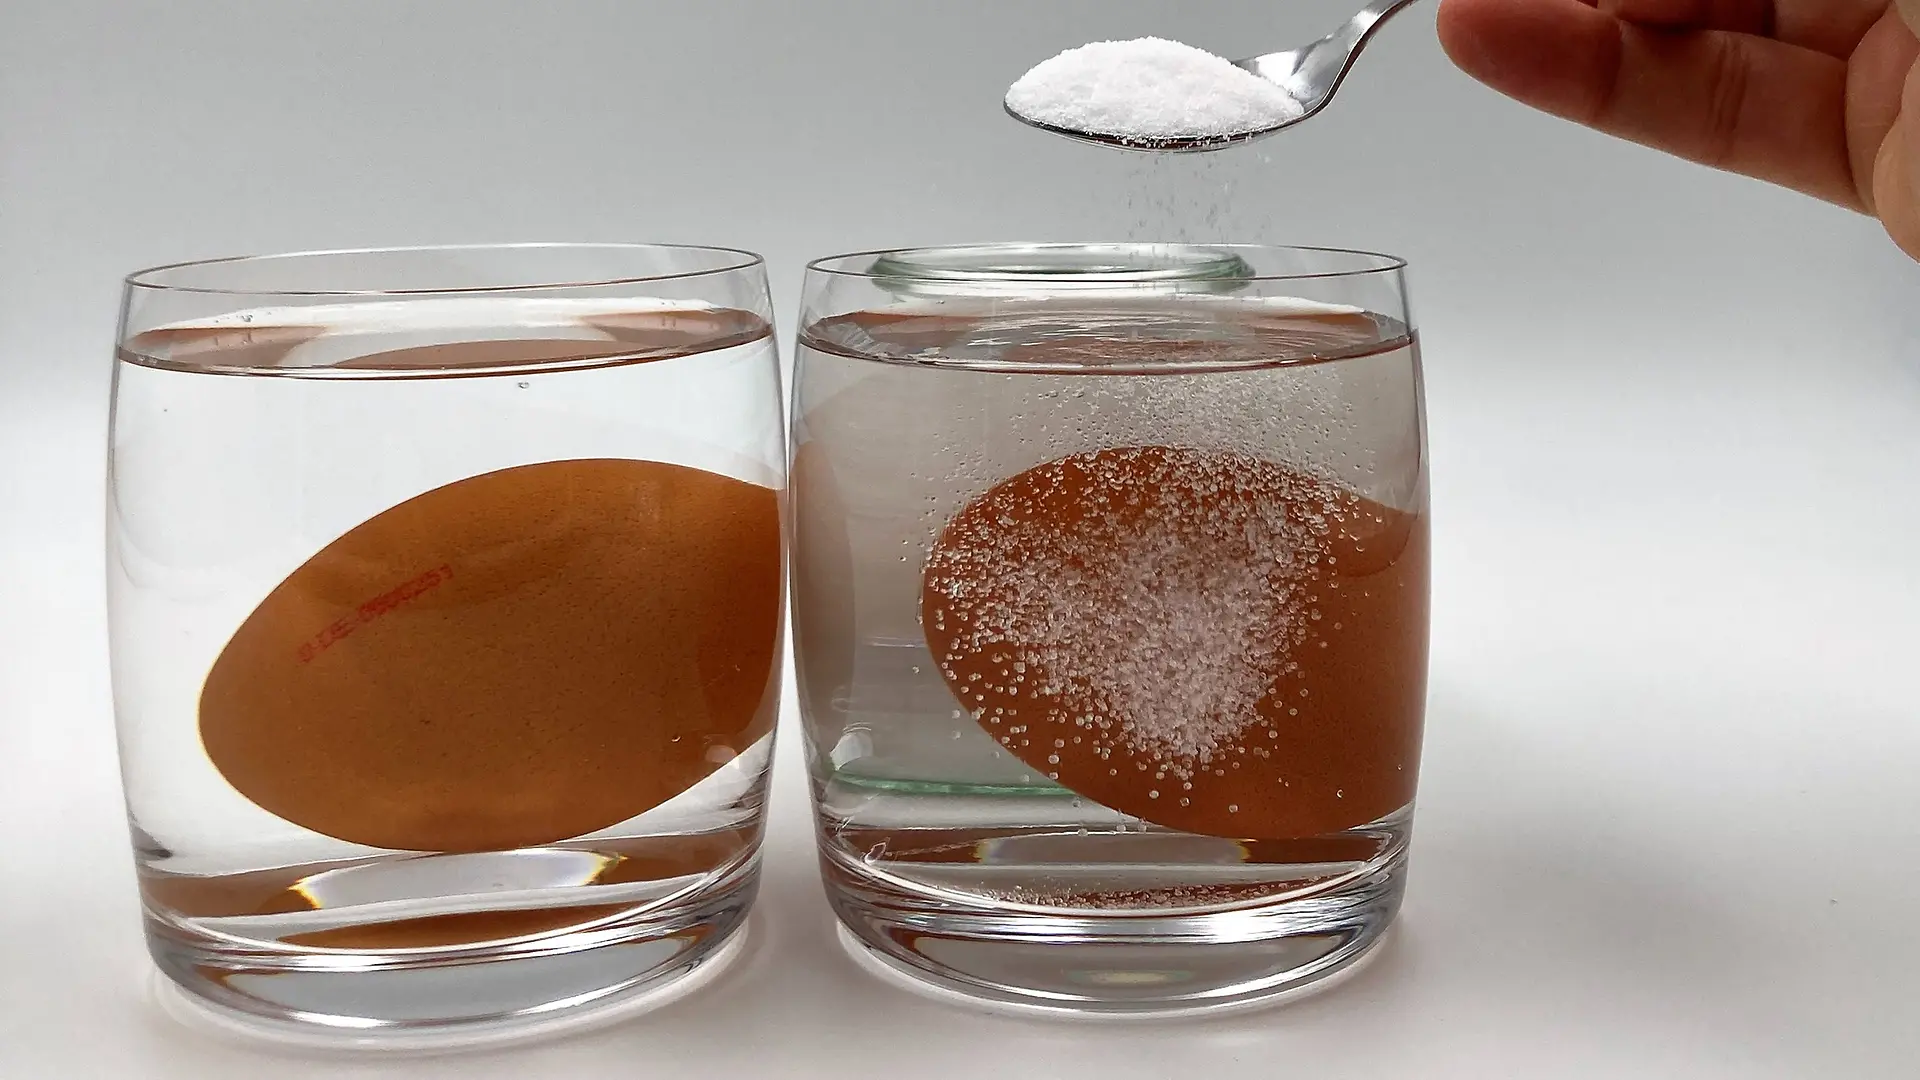 Zwei Gläser, jedes mit Wasser und einem Ei gefüllt. Auf der rechten Seite ist ein Teil einer Hand abgebildet, die einen Teelöffel mit Salz hält, der in das rechte Glas gegeben wird.